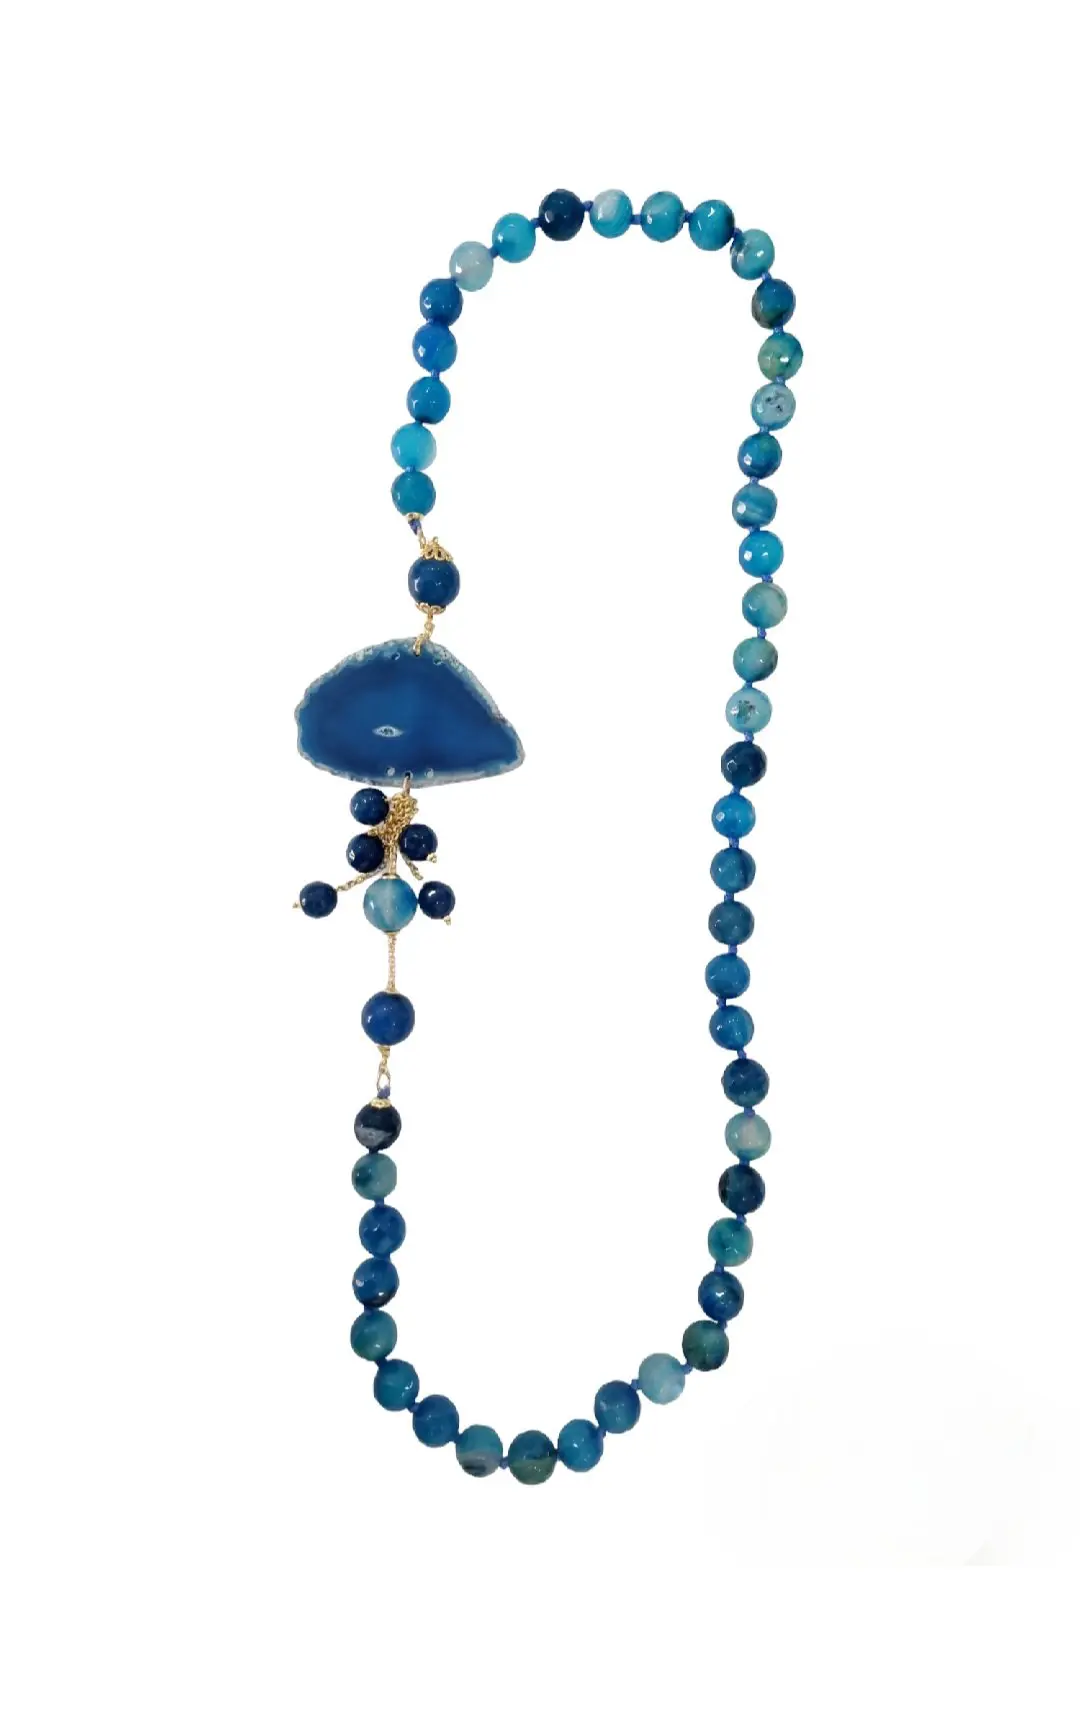 Halskette aus gestreiftem blauem Achat und goldenen Messingelementen. Länge 75cm